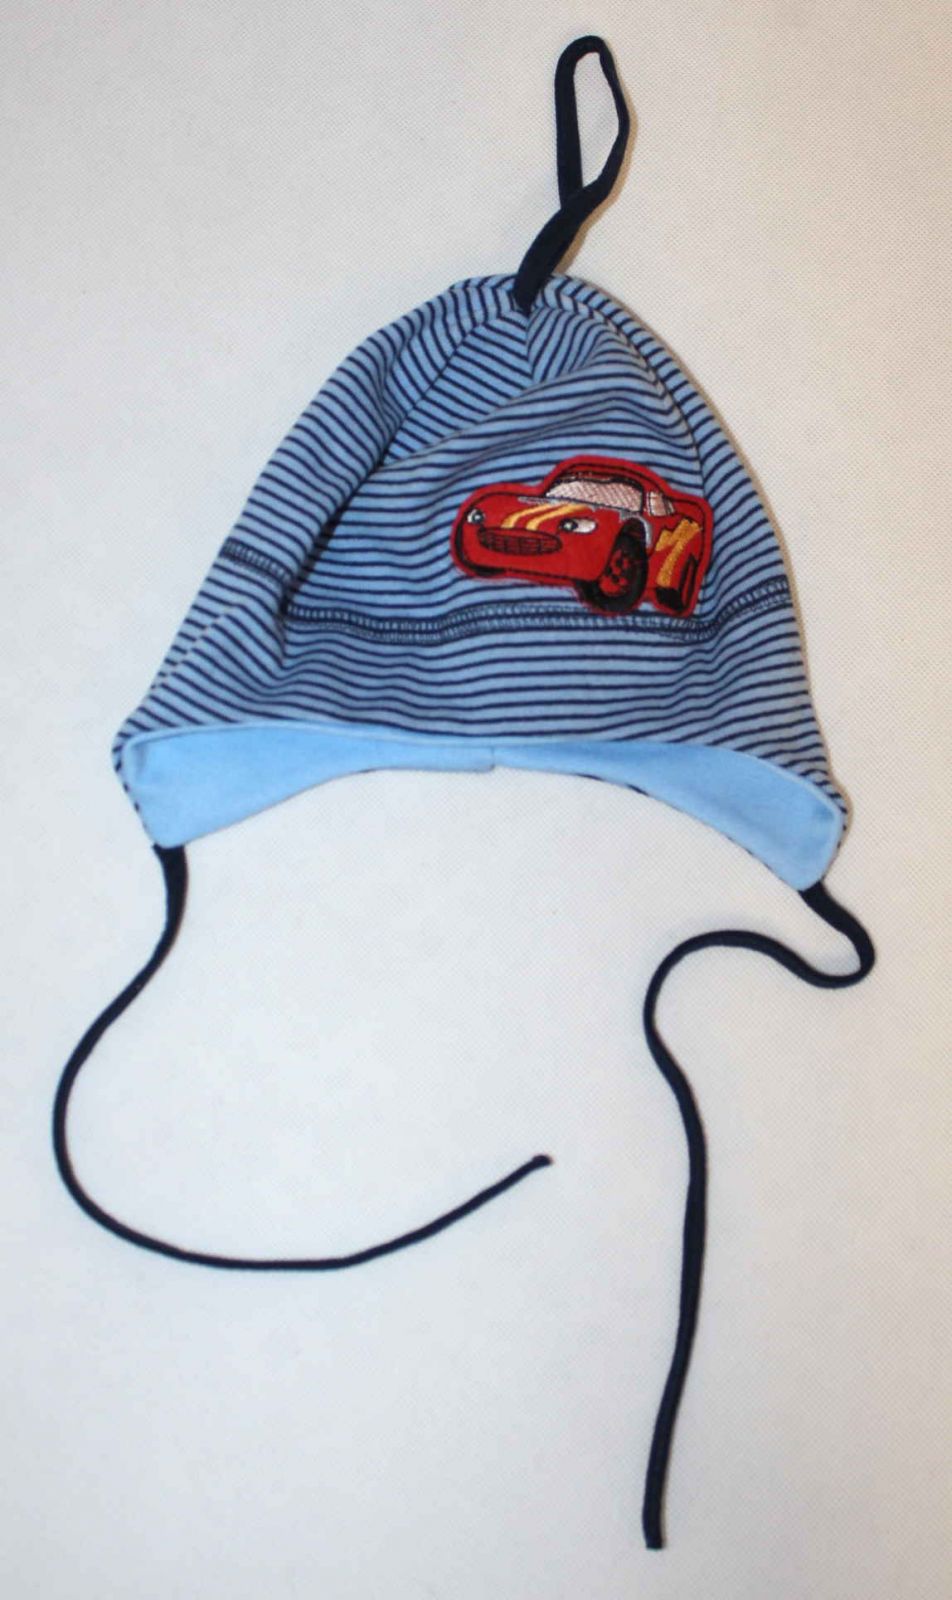 dětská čepice, kojenecká čepice, čepice pro miminka, chlapecká čepice, jarní čepice, bavlněná čepice, čepice se zavazováním, čepice s autem, sv. modrá čepice na zavazování, cars čepice